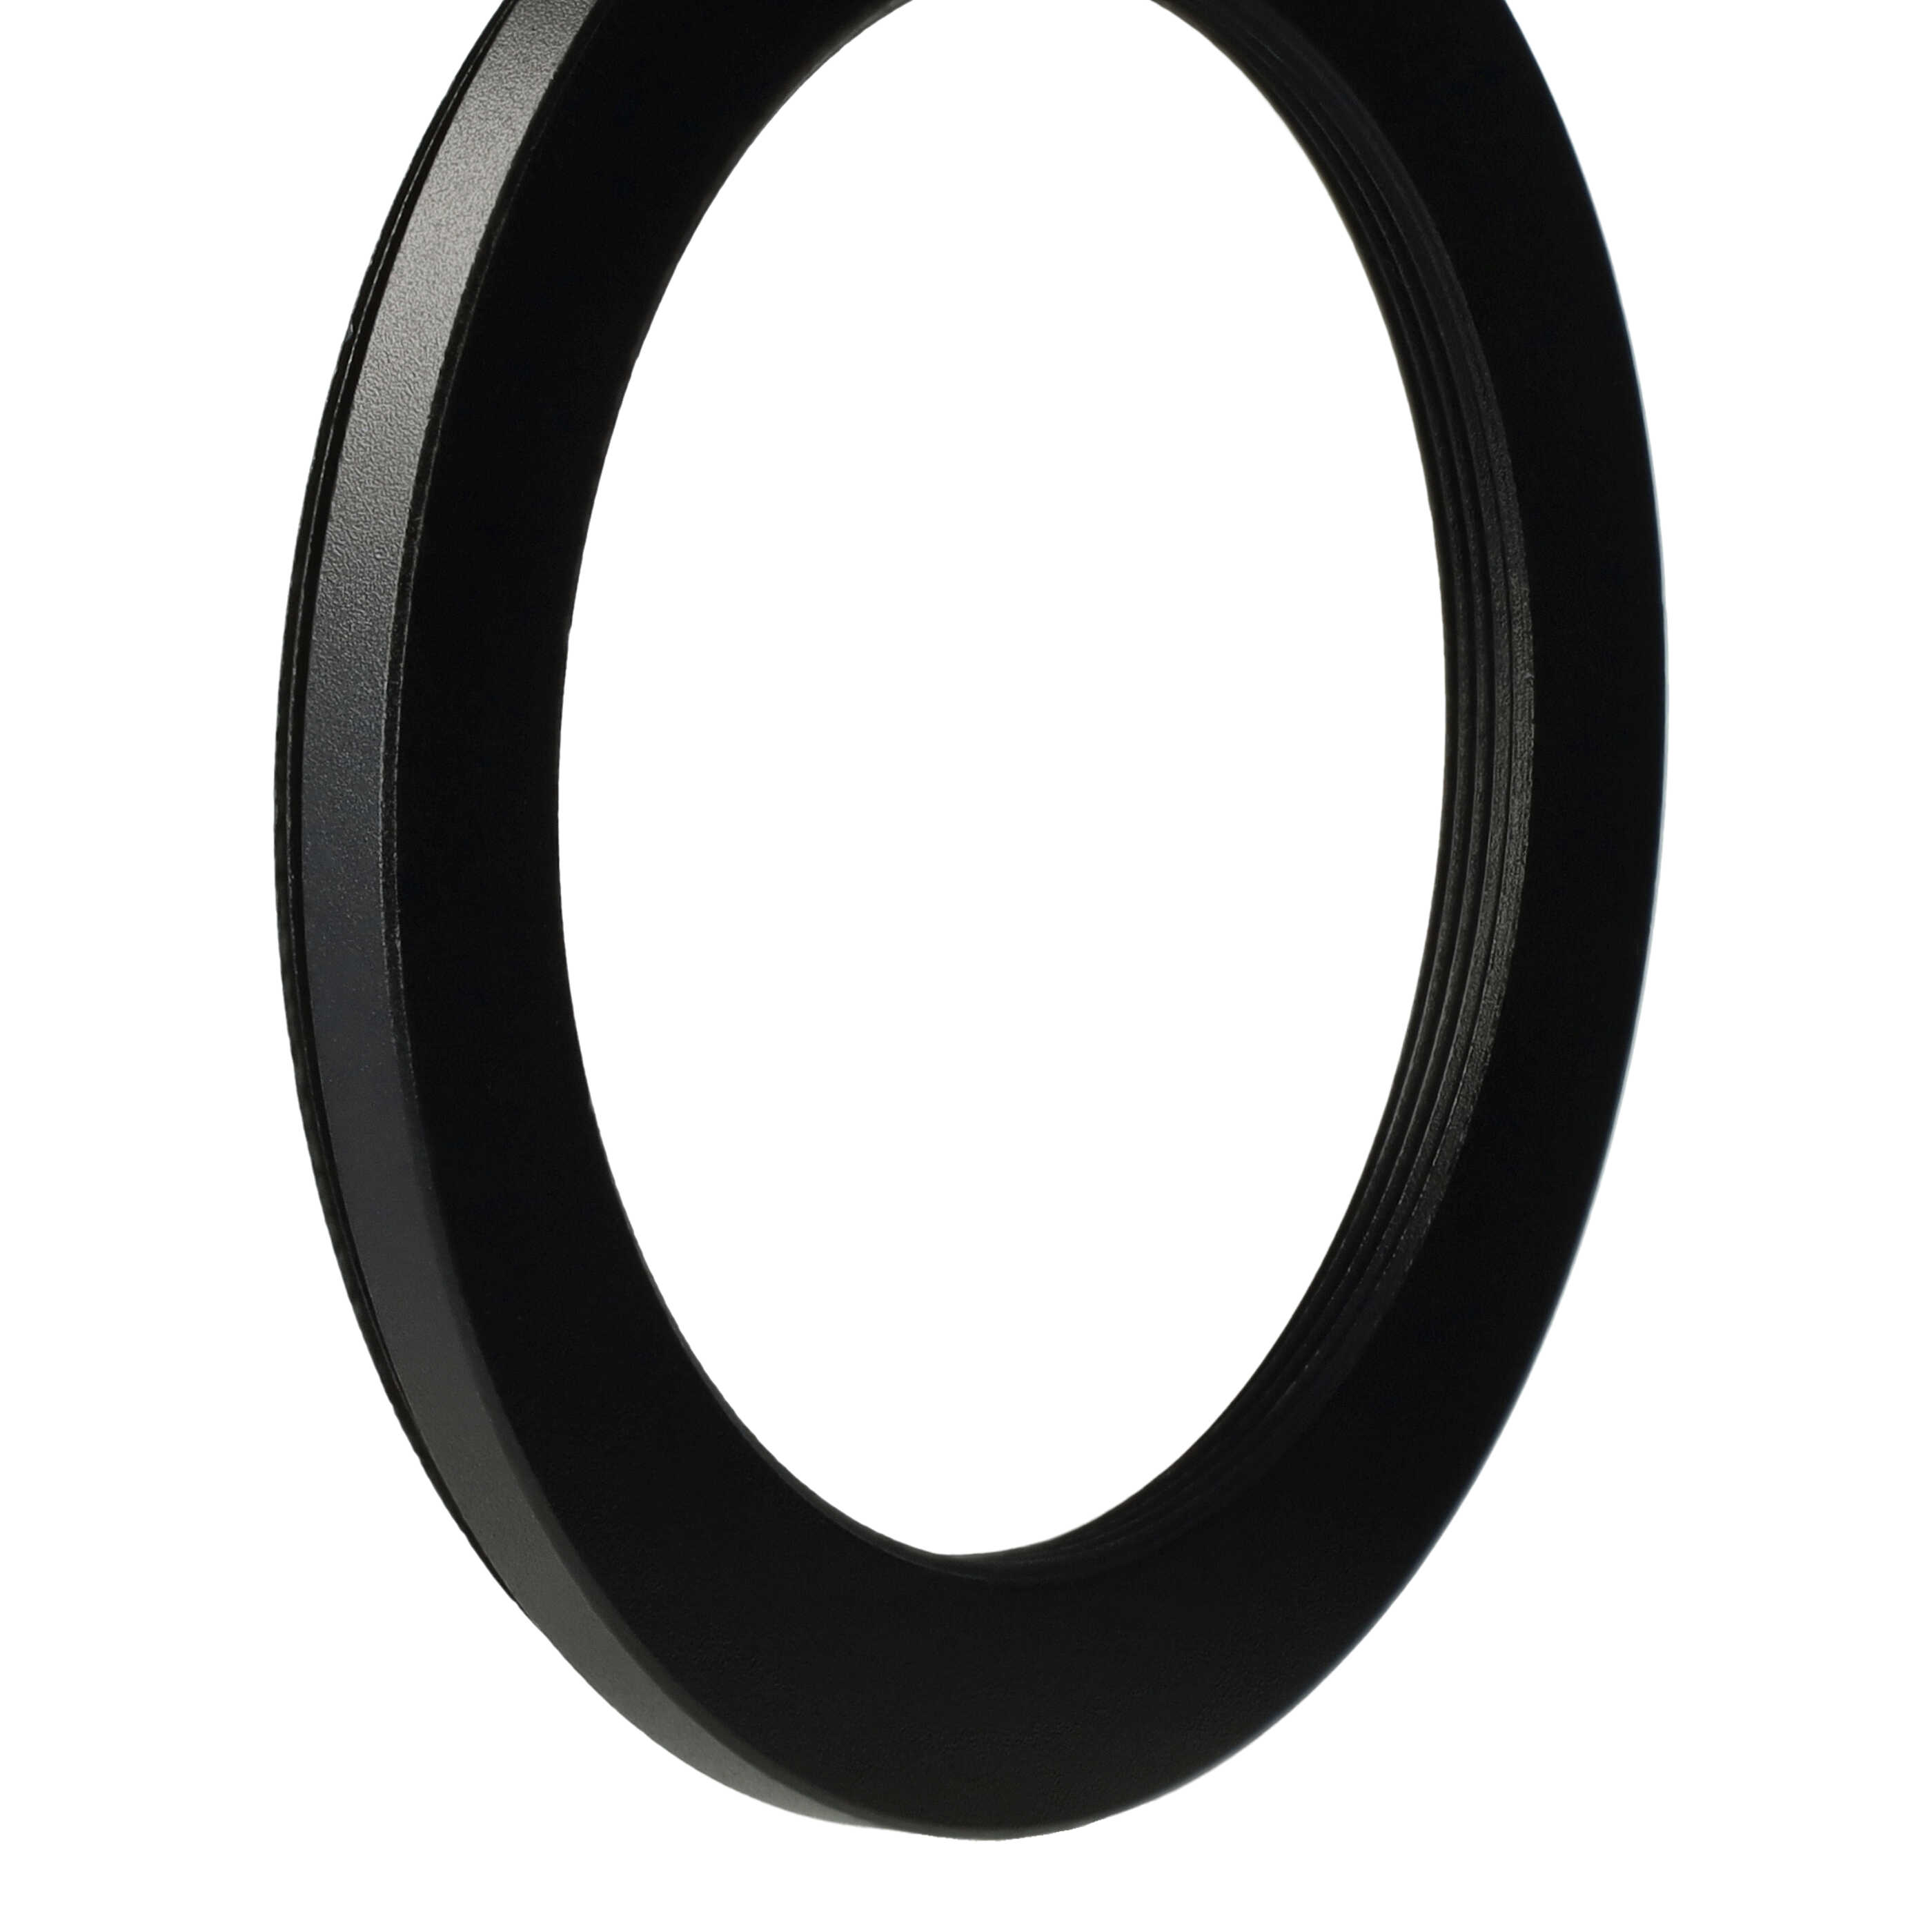 Step-Down-Ring Adapter von 67 mm auf 52 mm für diverse Kamera Objektive